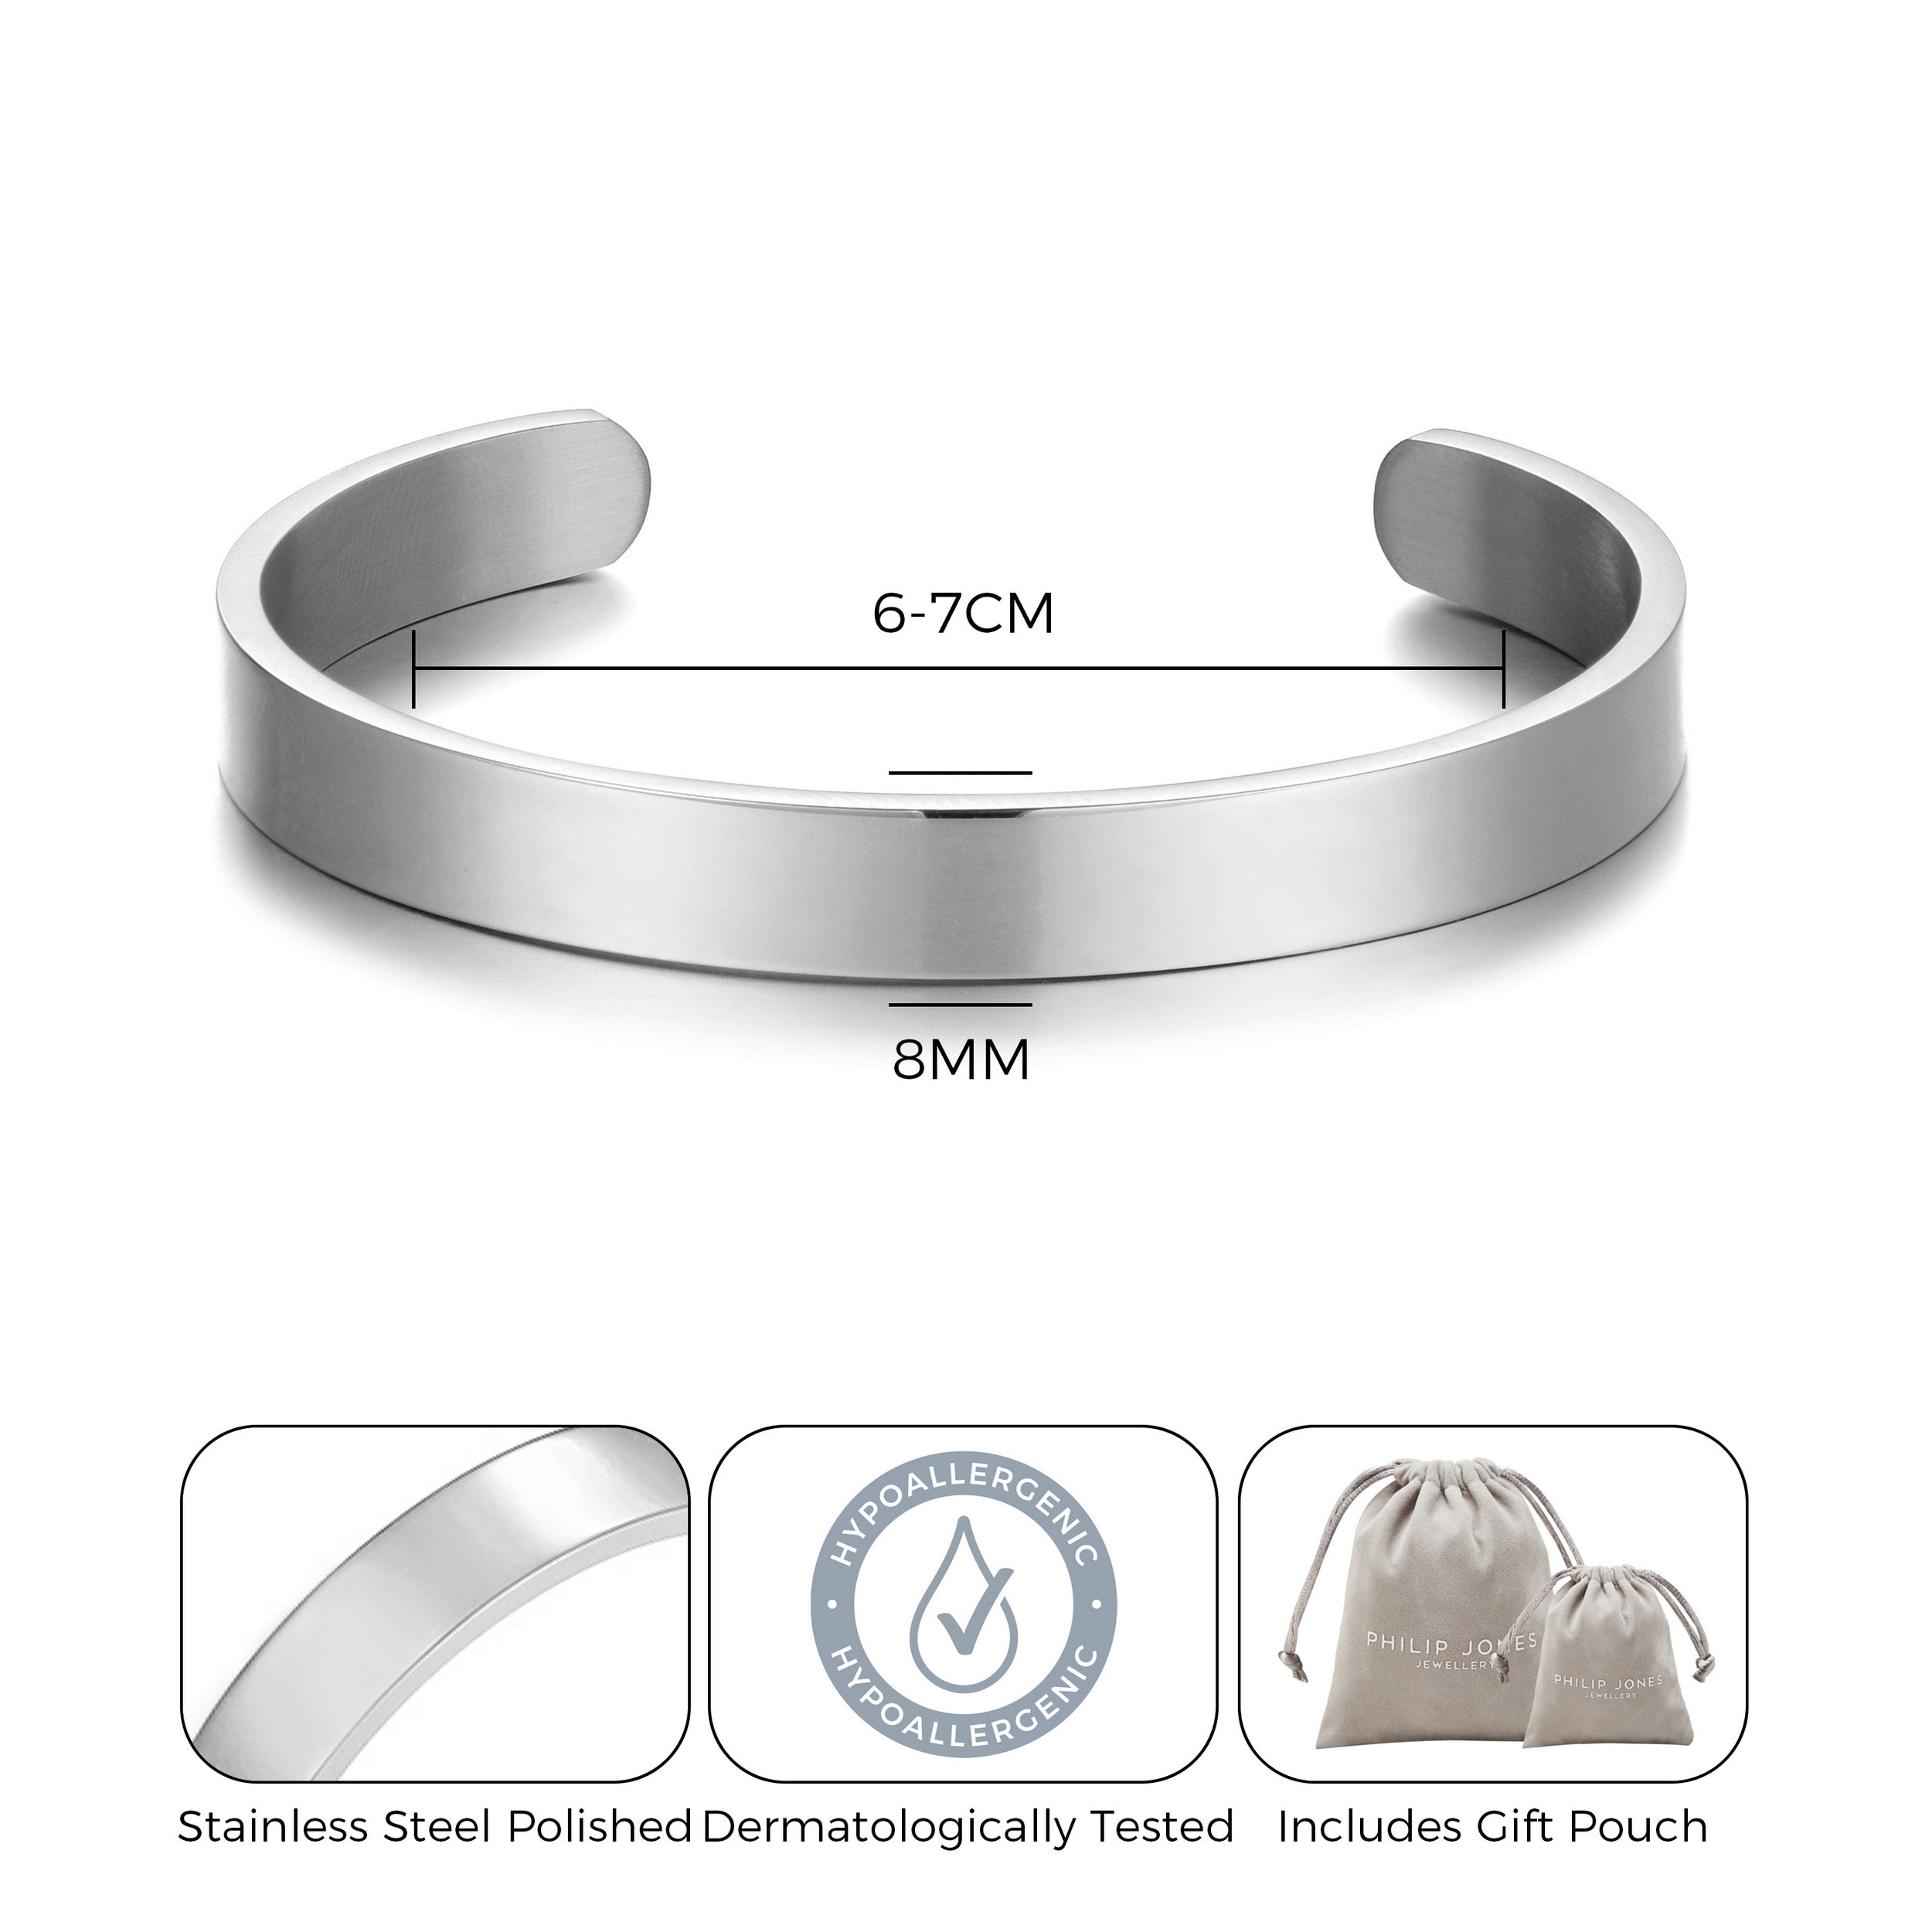 Men's Stainless Steel Cuff Bracelet